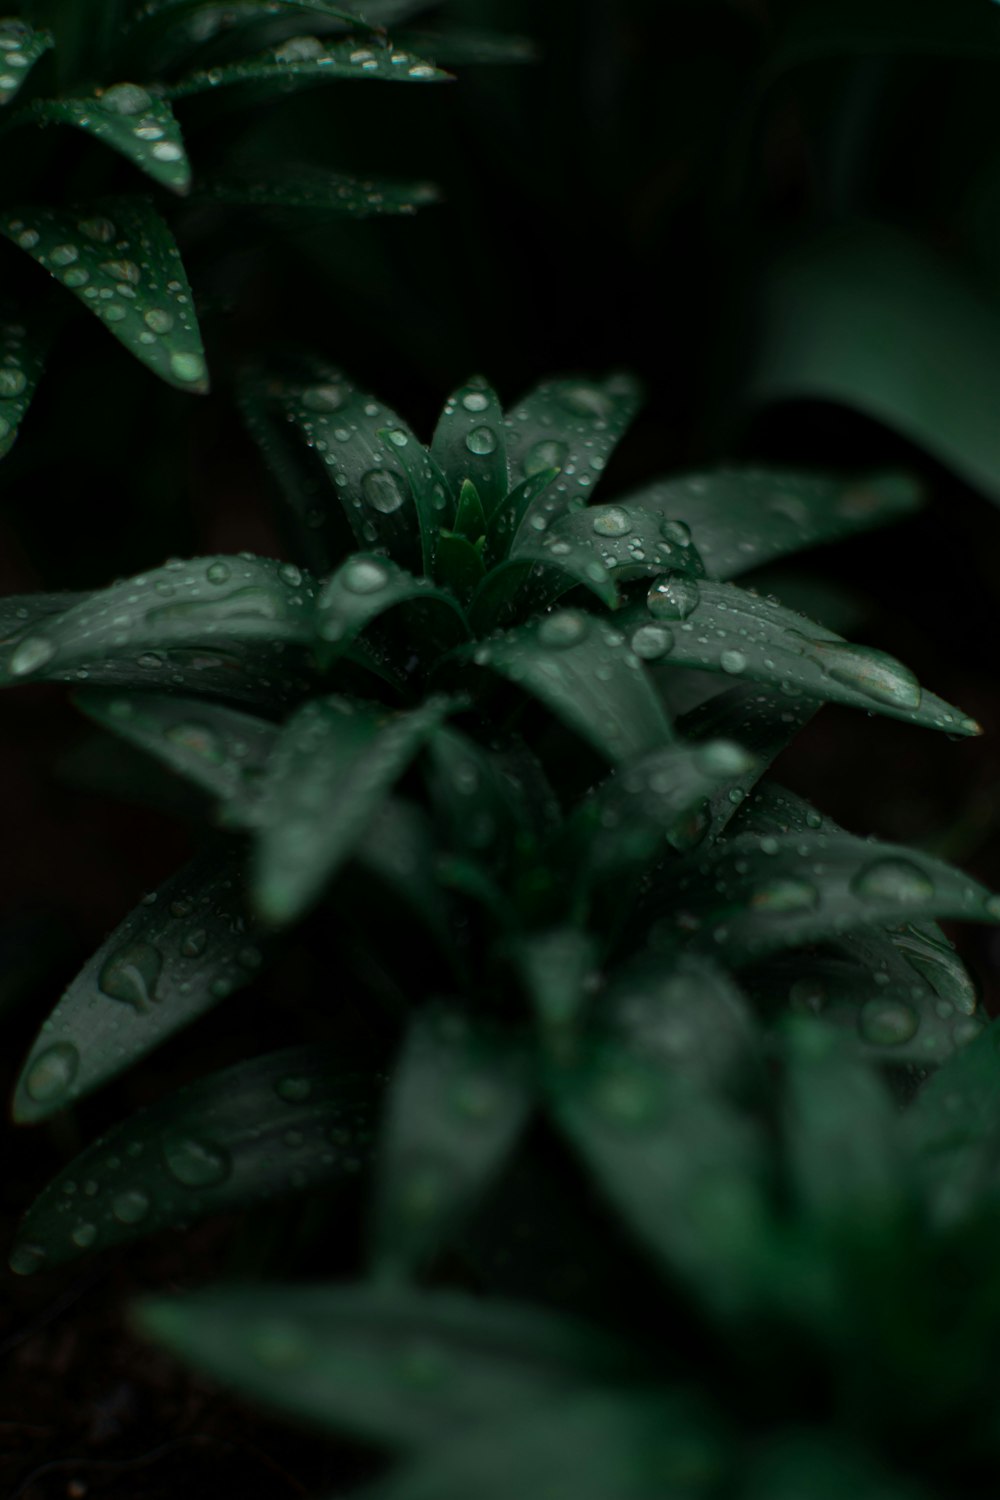 gouttelettes d’eau sur plante verte